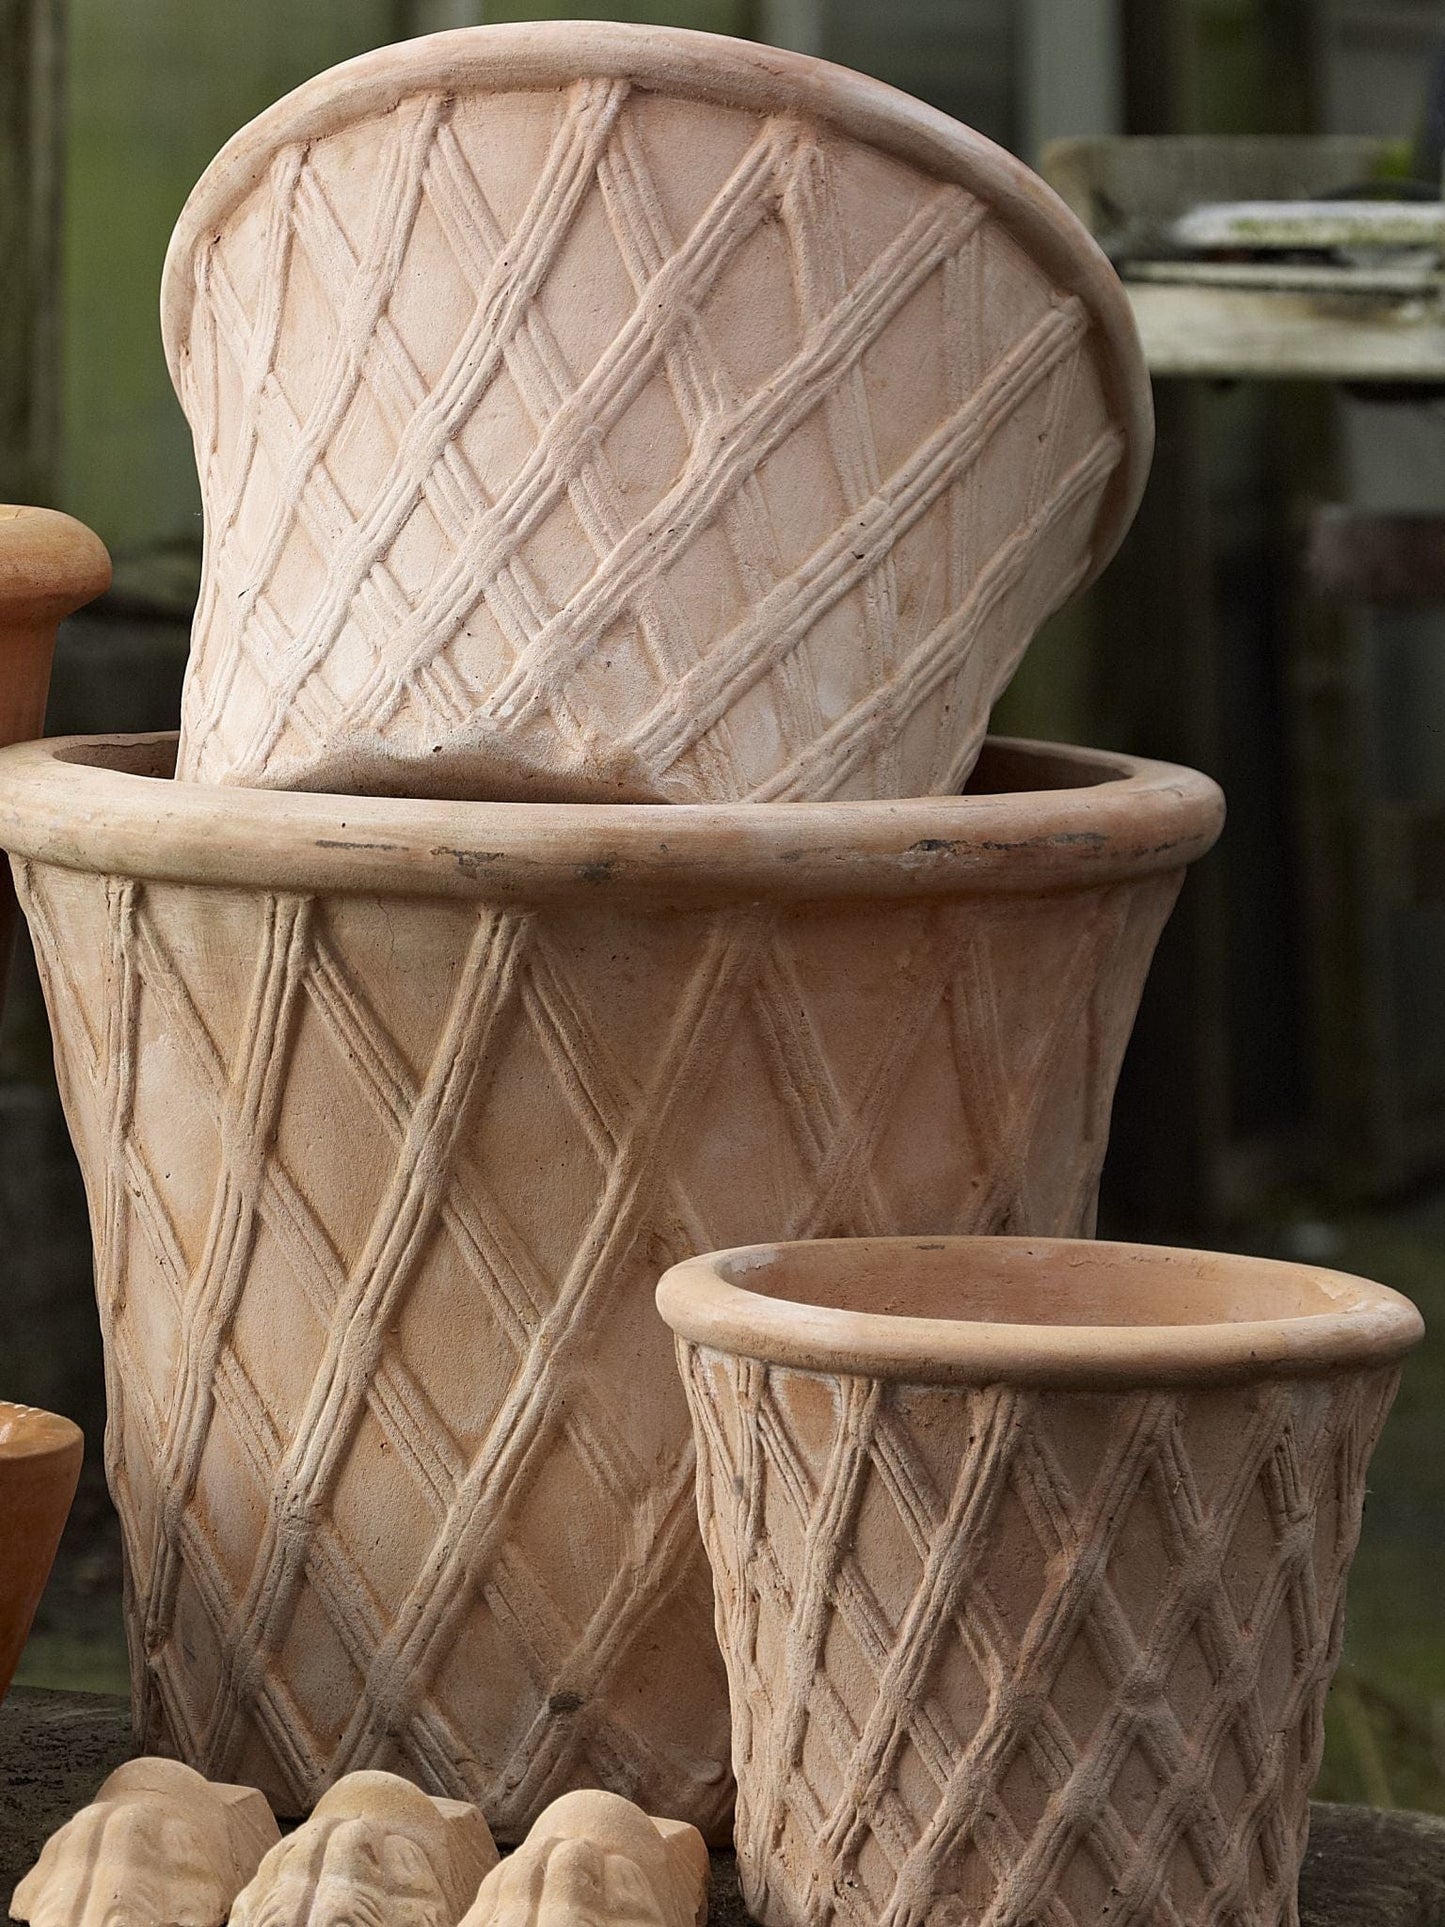 Lekker harlequin krukke i keramikk fra BGreen. De har så mye sjarm og smelter vakkert inn i hagen. Terracotta farge i 3 størrelser.